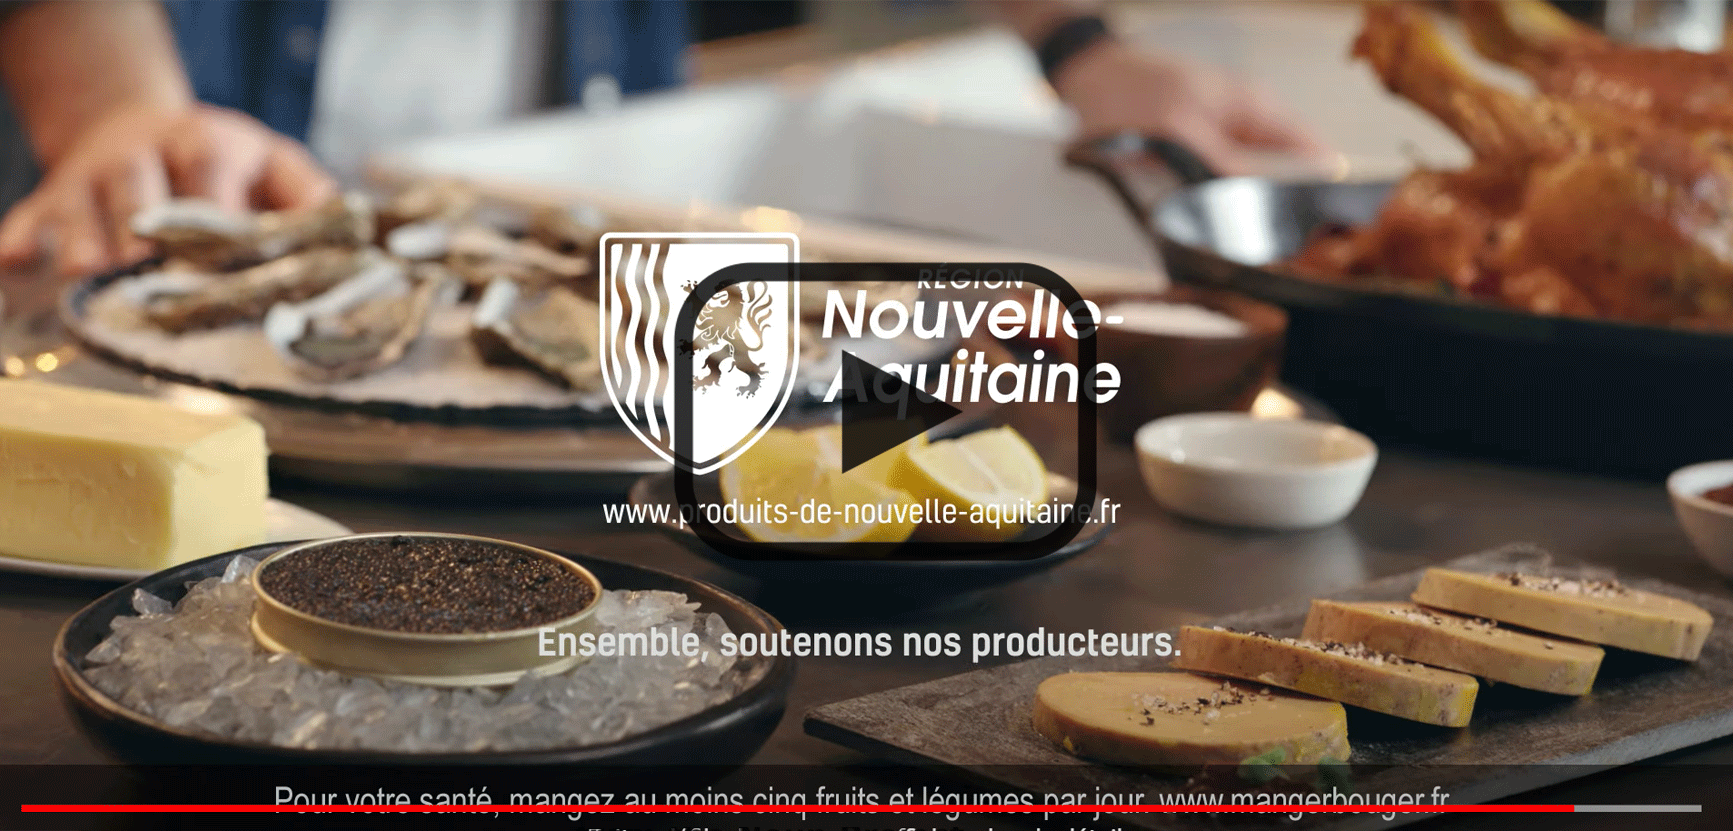 Spot TV "prenez le large avec les produits de Nouvelle-Aquitaine et faites-vous plaisir !"